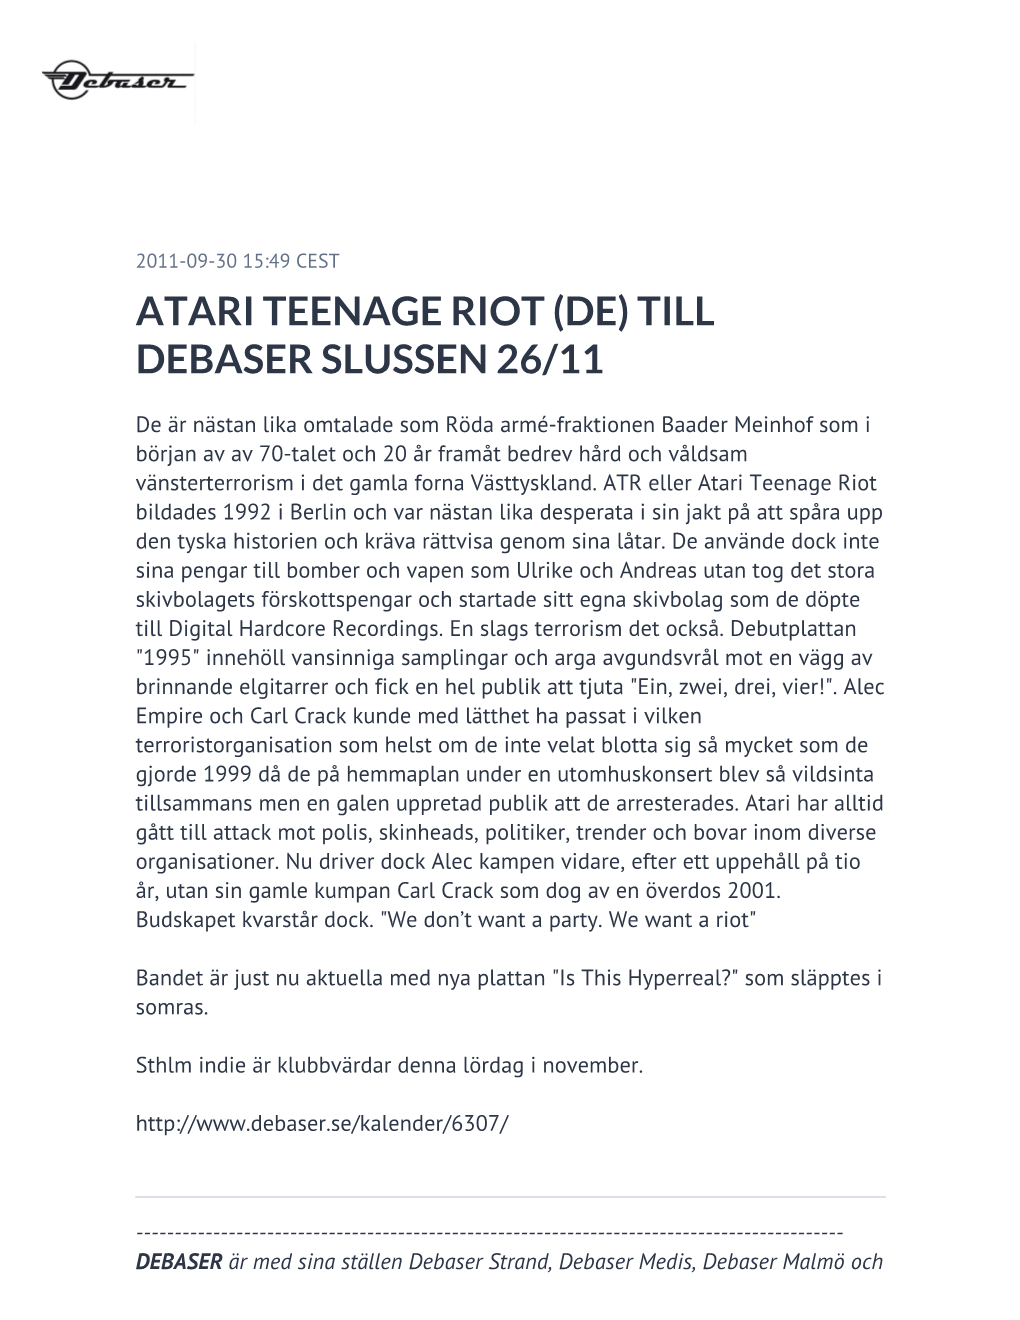 Atari Teenage Riot (De) Till Debaser Slussen 26/11